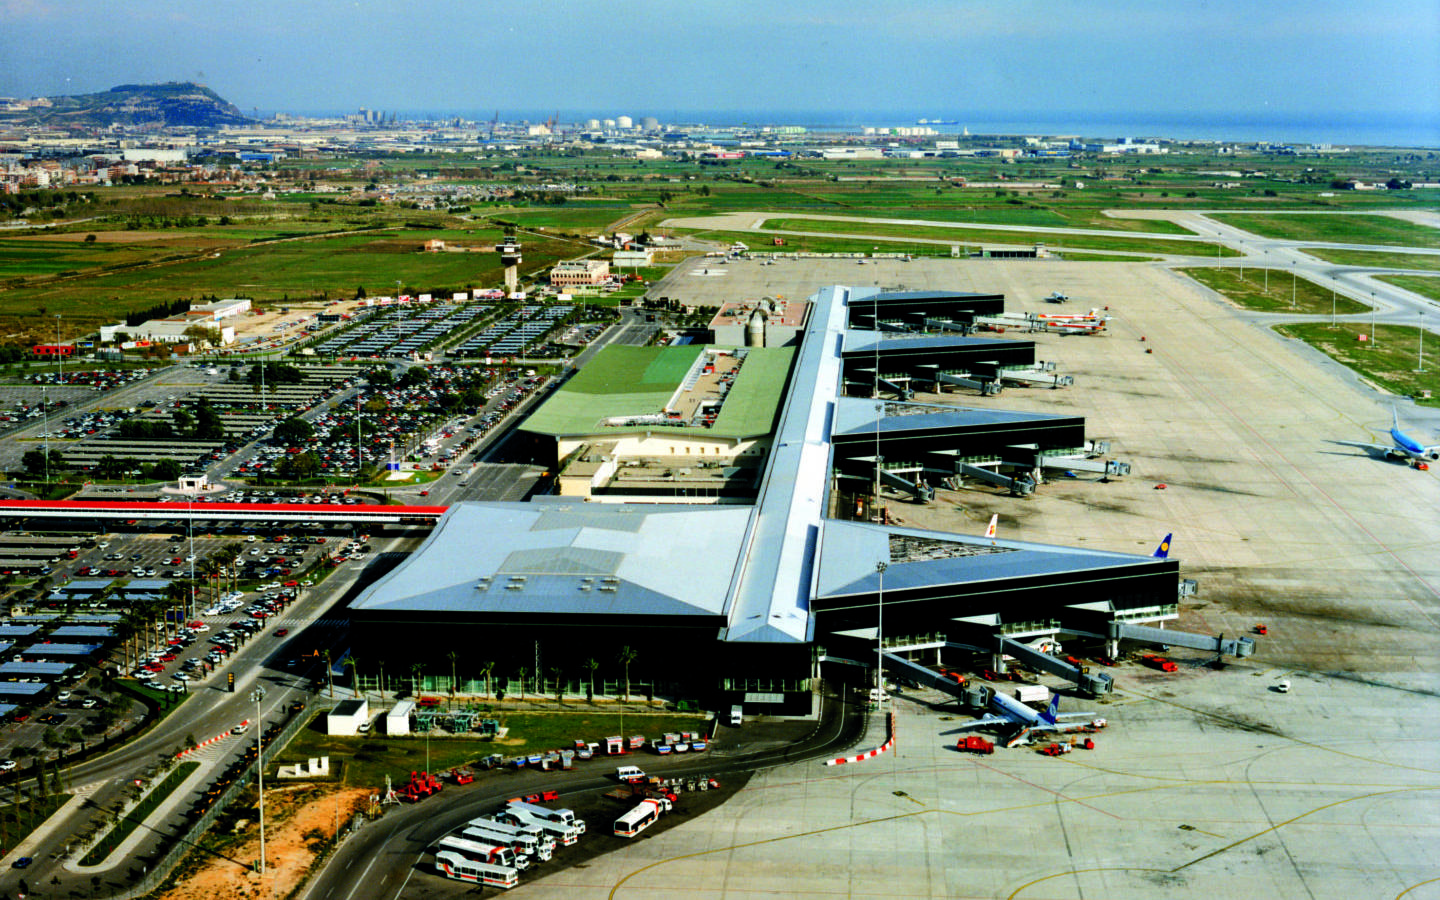 аэропорт в барселоне испания